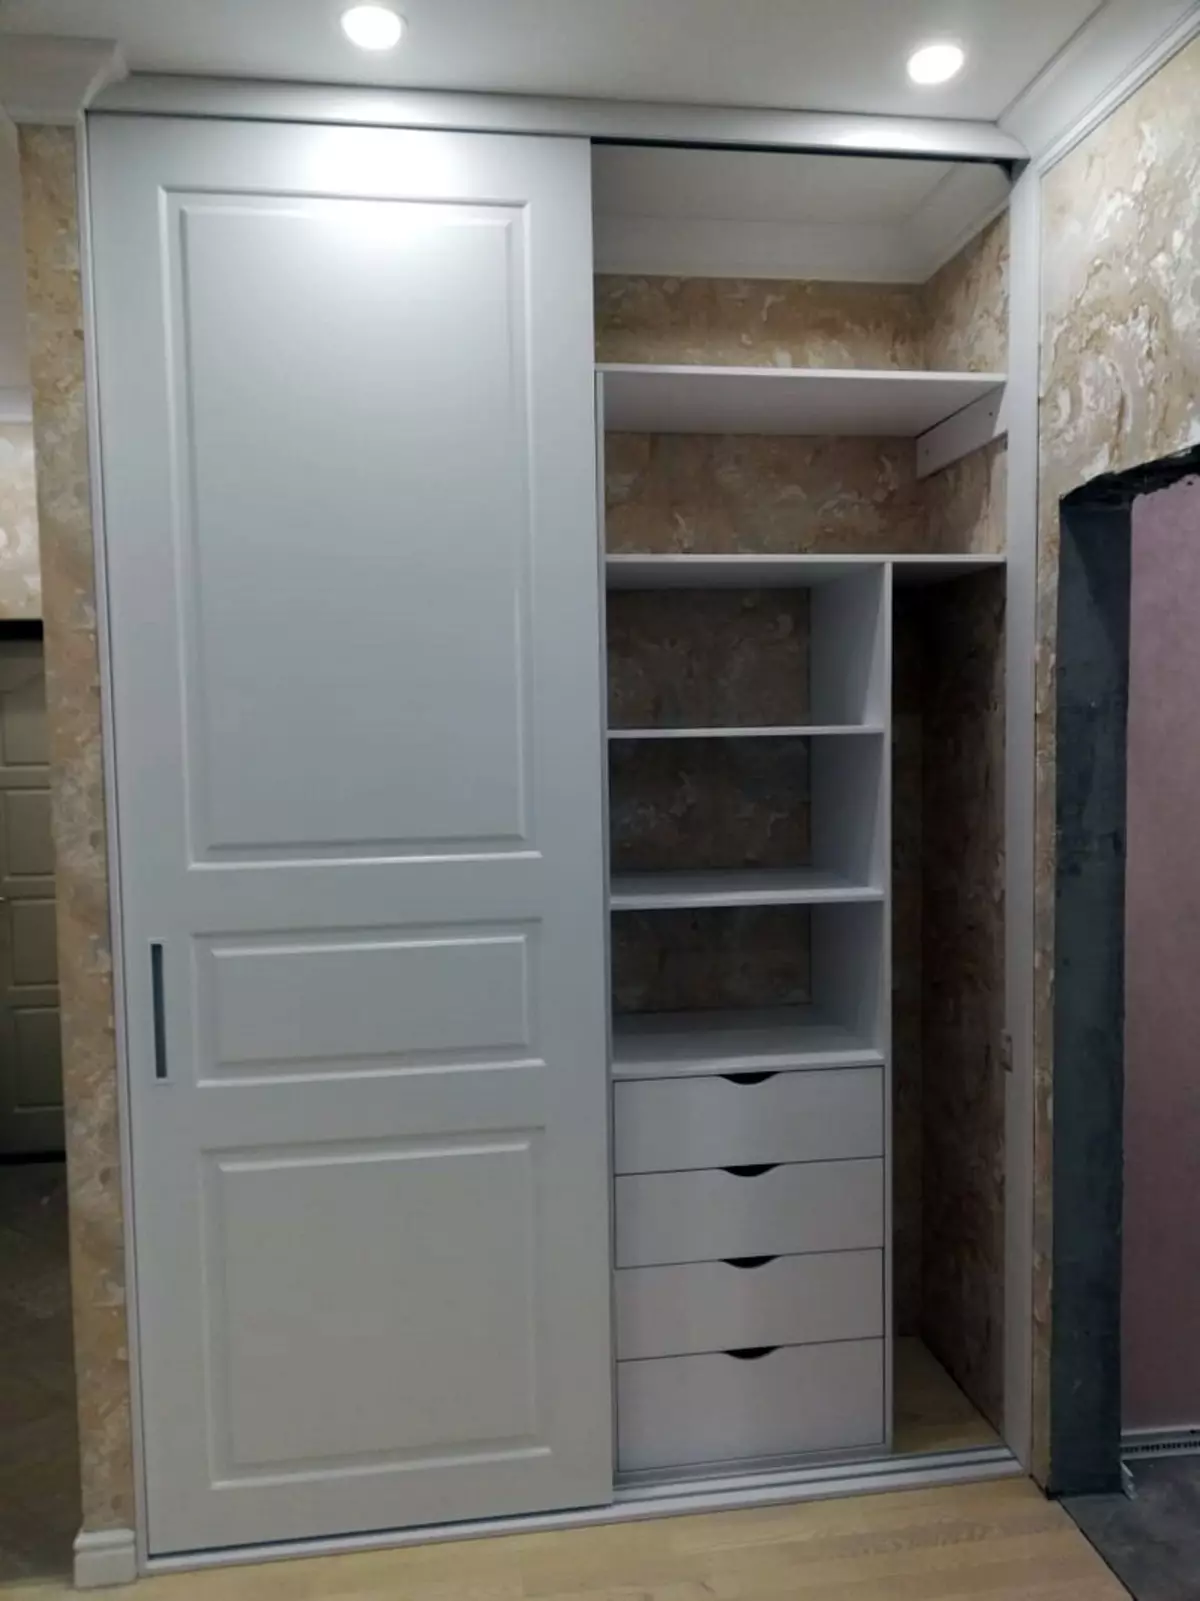 ตู้เสื้อผ้าในตัวในห้องโถง (86 รูป): การออกแบบแนวคิดของตู้ฝังตัวในทางเดิน เลือกตู้กระจกเชิงมุมในห้องโถงขนาดเล็กและตัวเลือกอื่น ๆ 20926_32